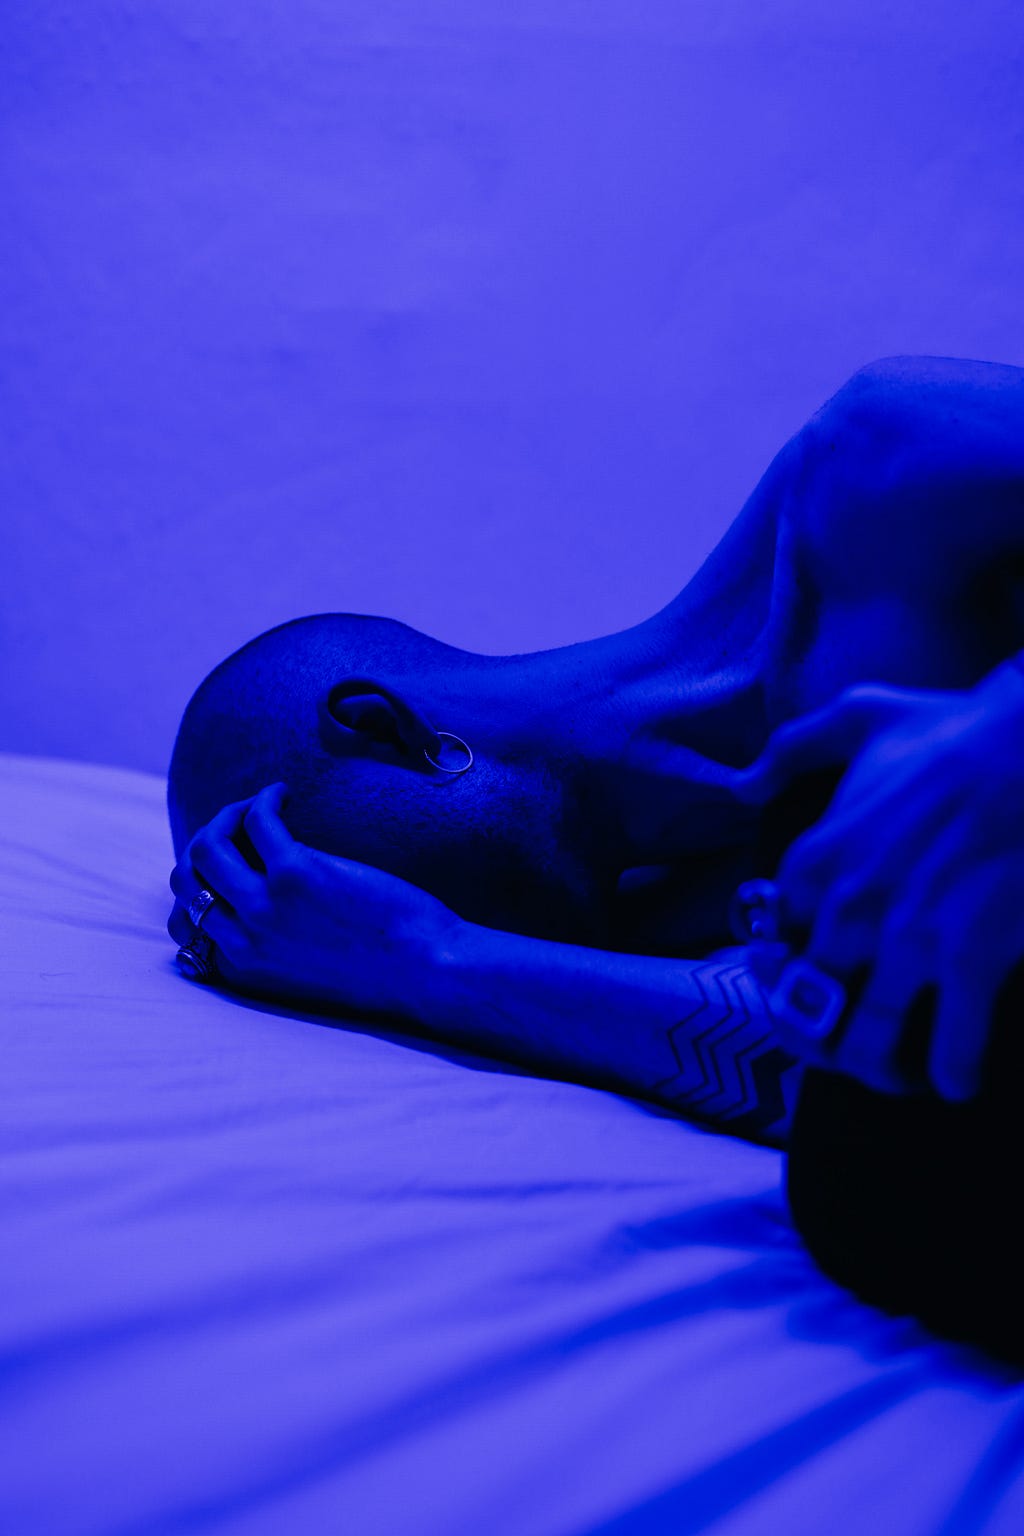 Uma foto de uma pessoa em uma cama com a mão sobre o rosto e iluminada por uma luz rox